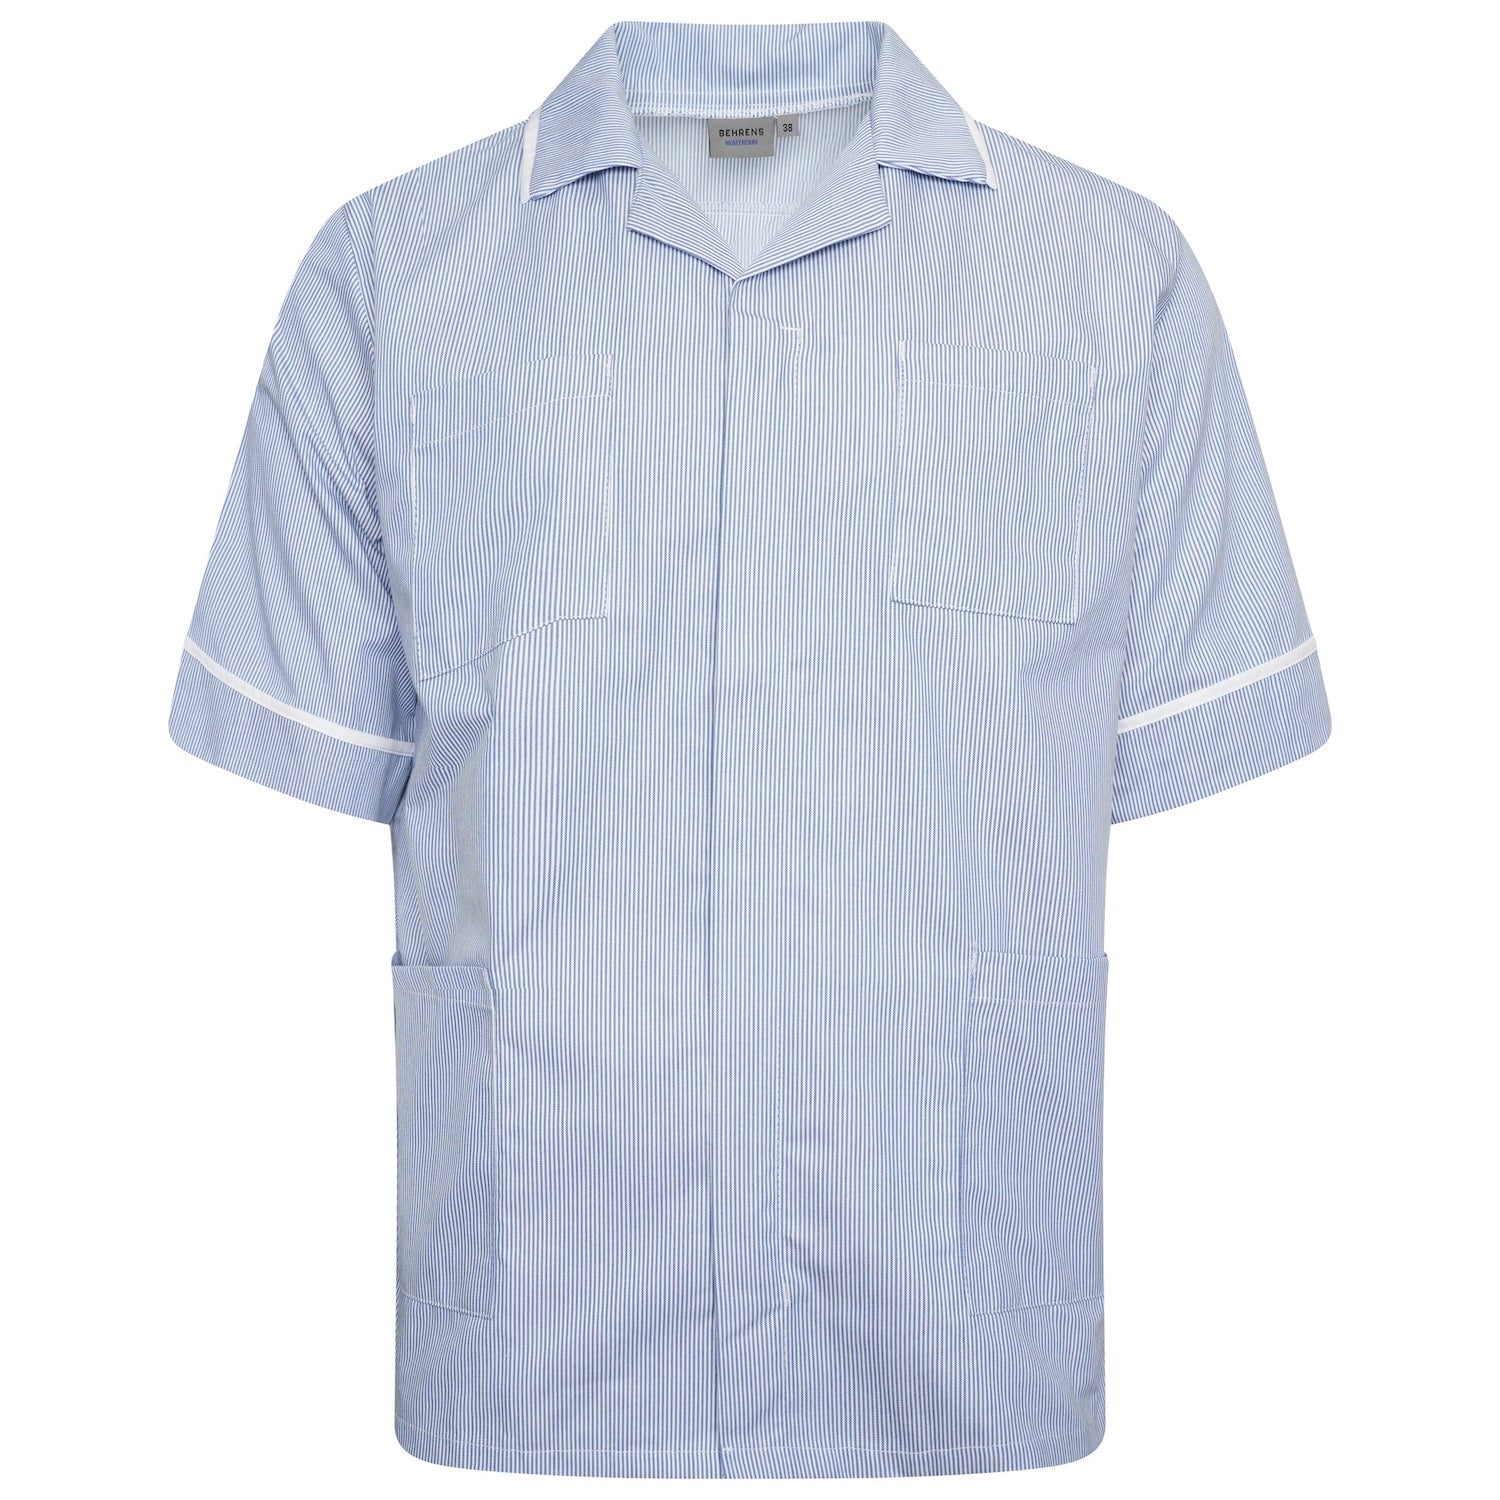 Mens Healthcare Tunic | Blue White Stripe/White Trim